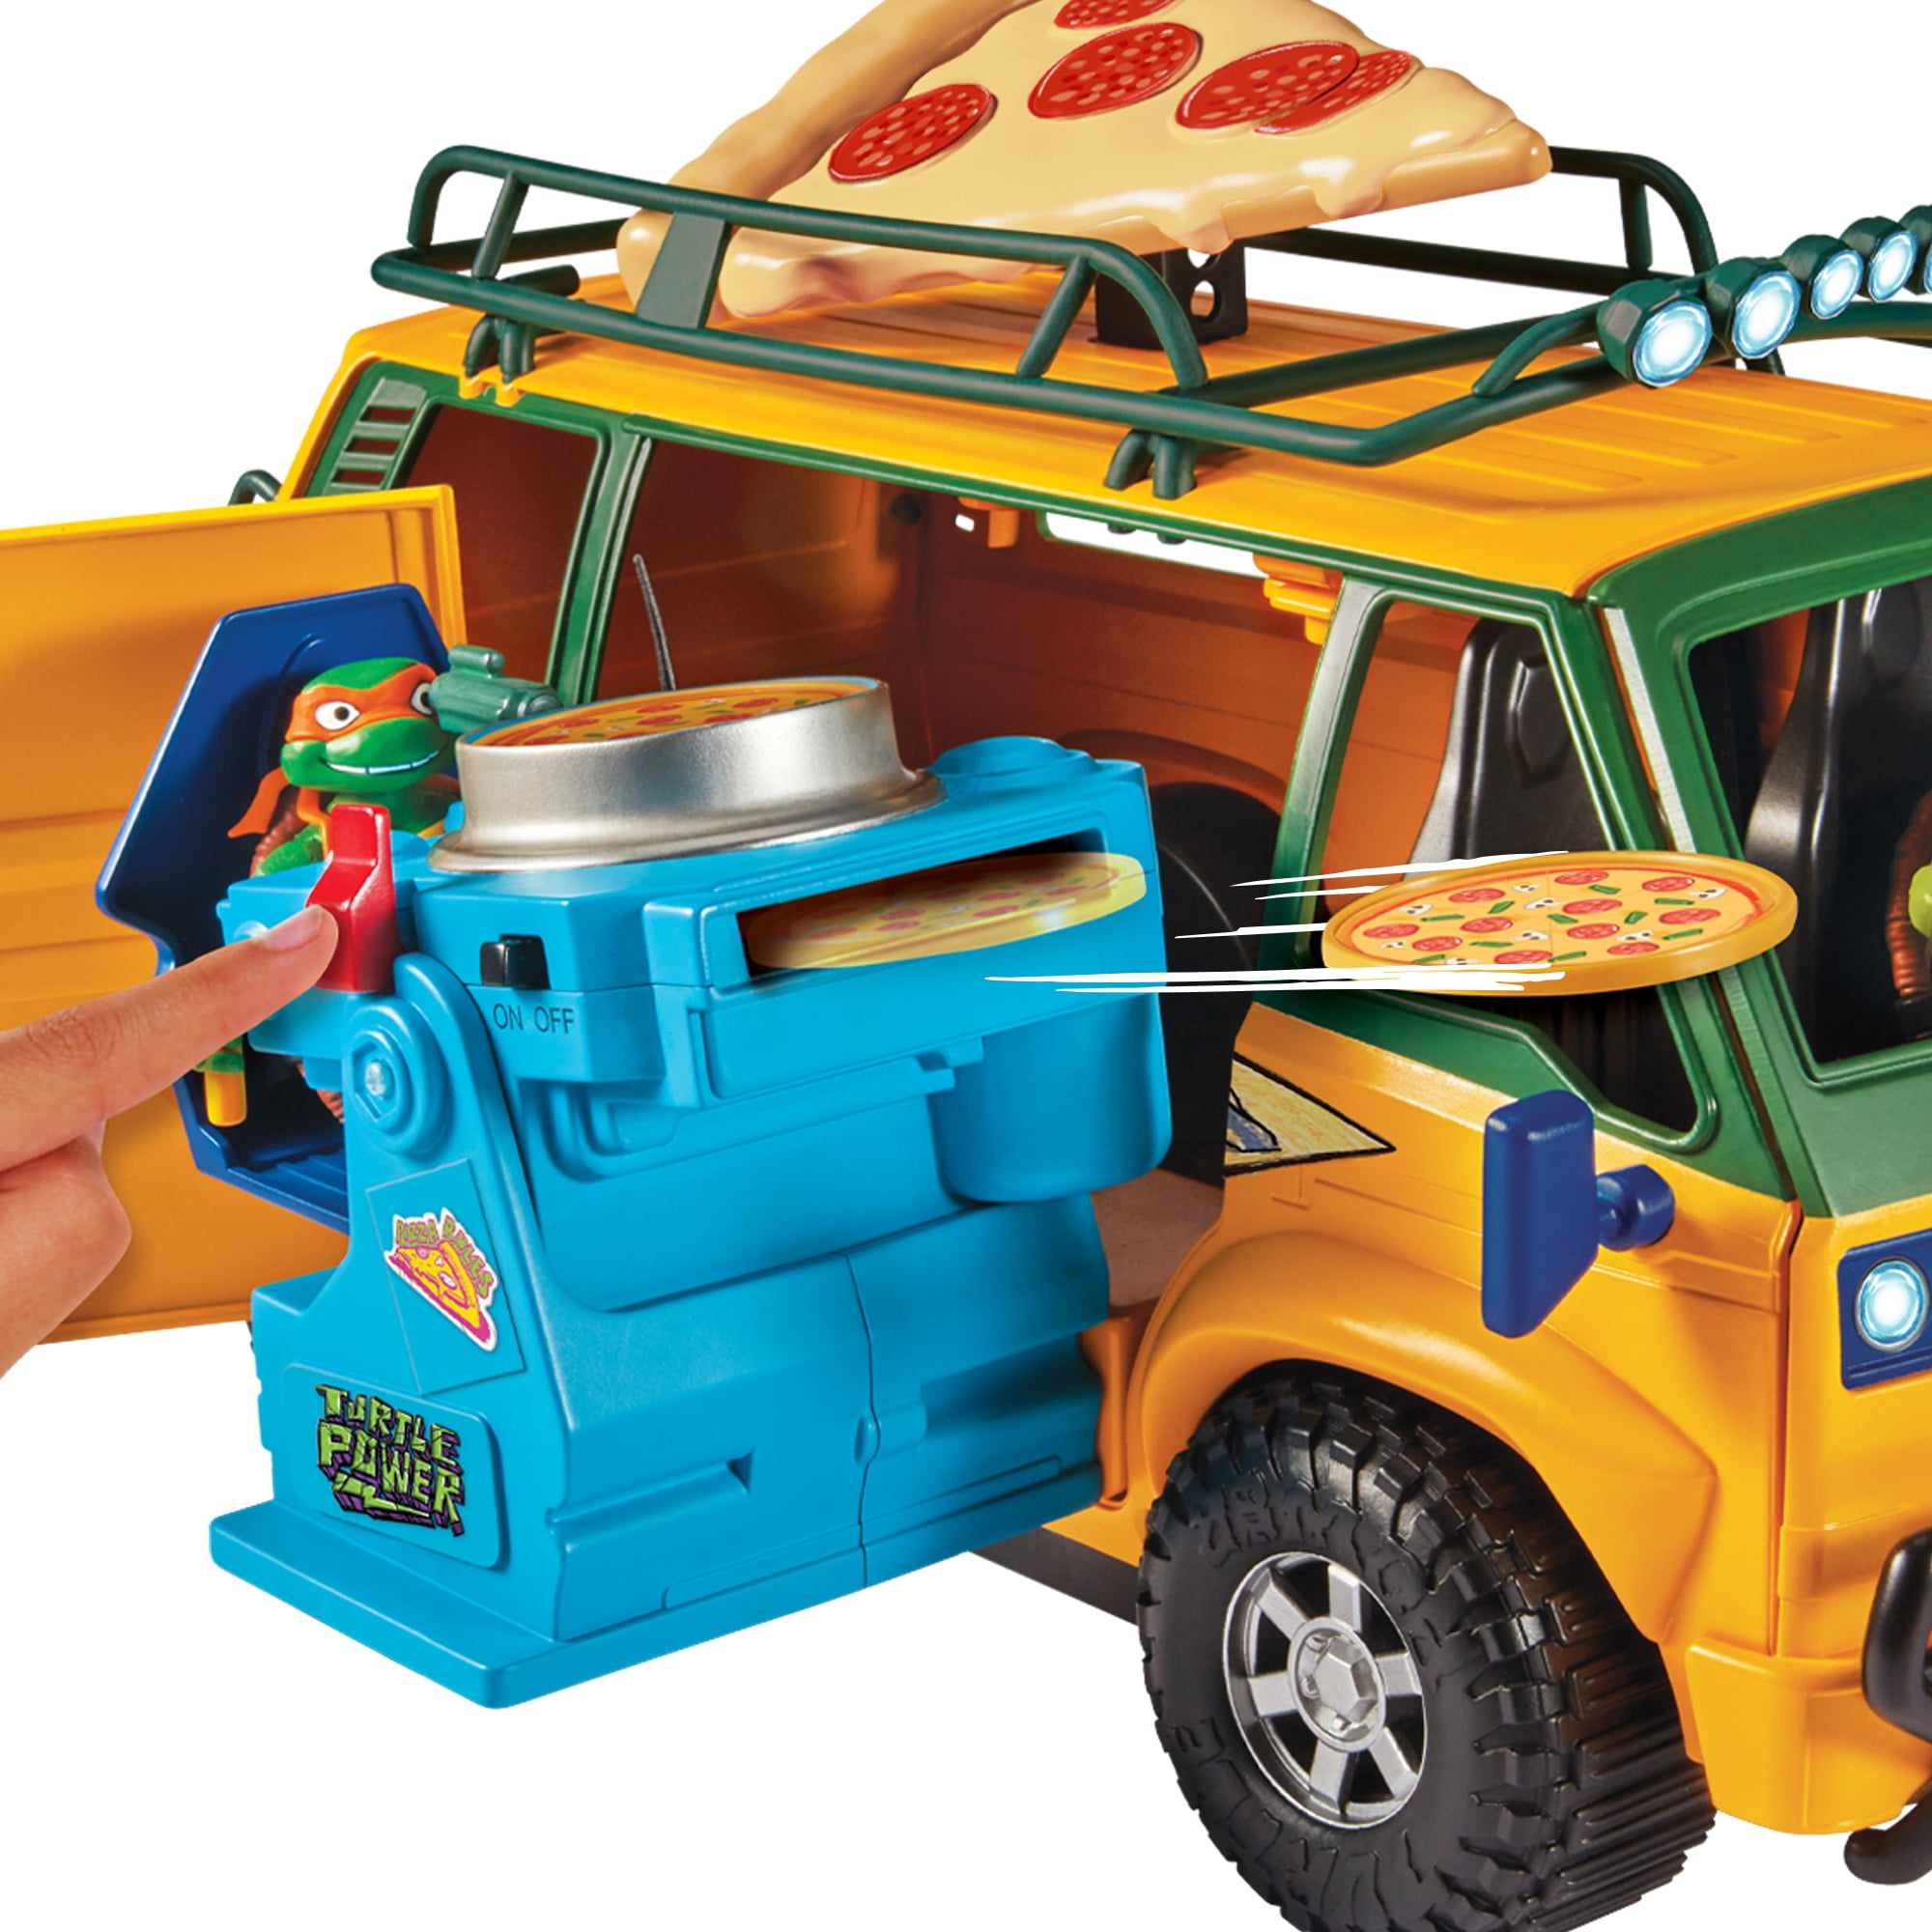 Teenage Mutant Ninja Turtles Mutant Mayhem Pepperoni Pizza, 18.13 oz -  Kroger